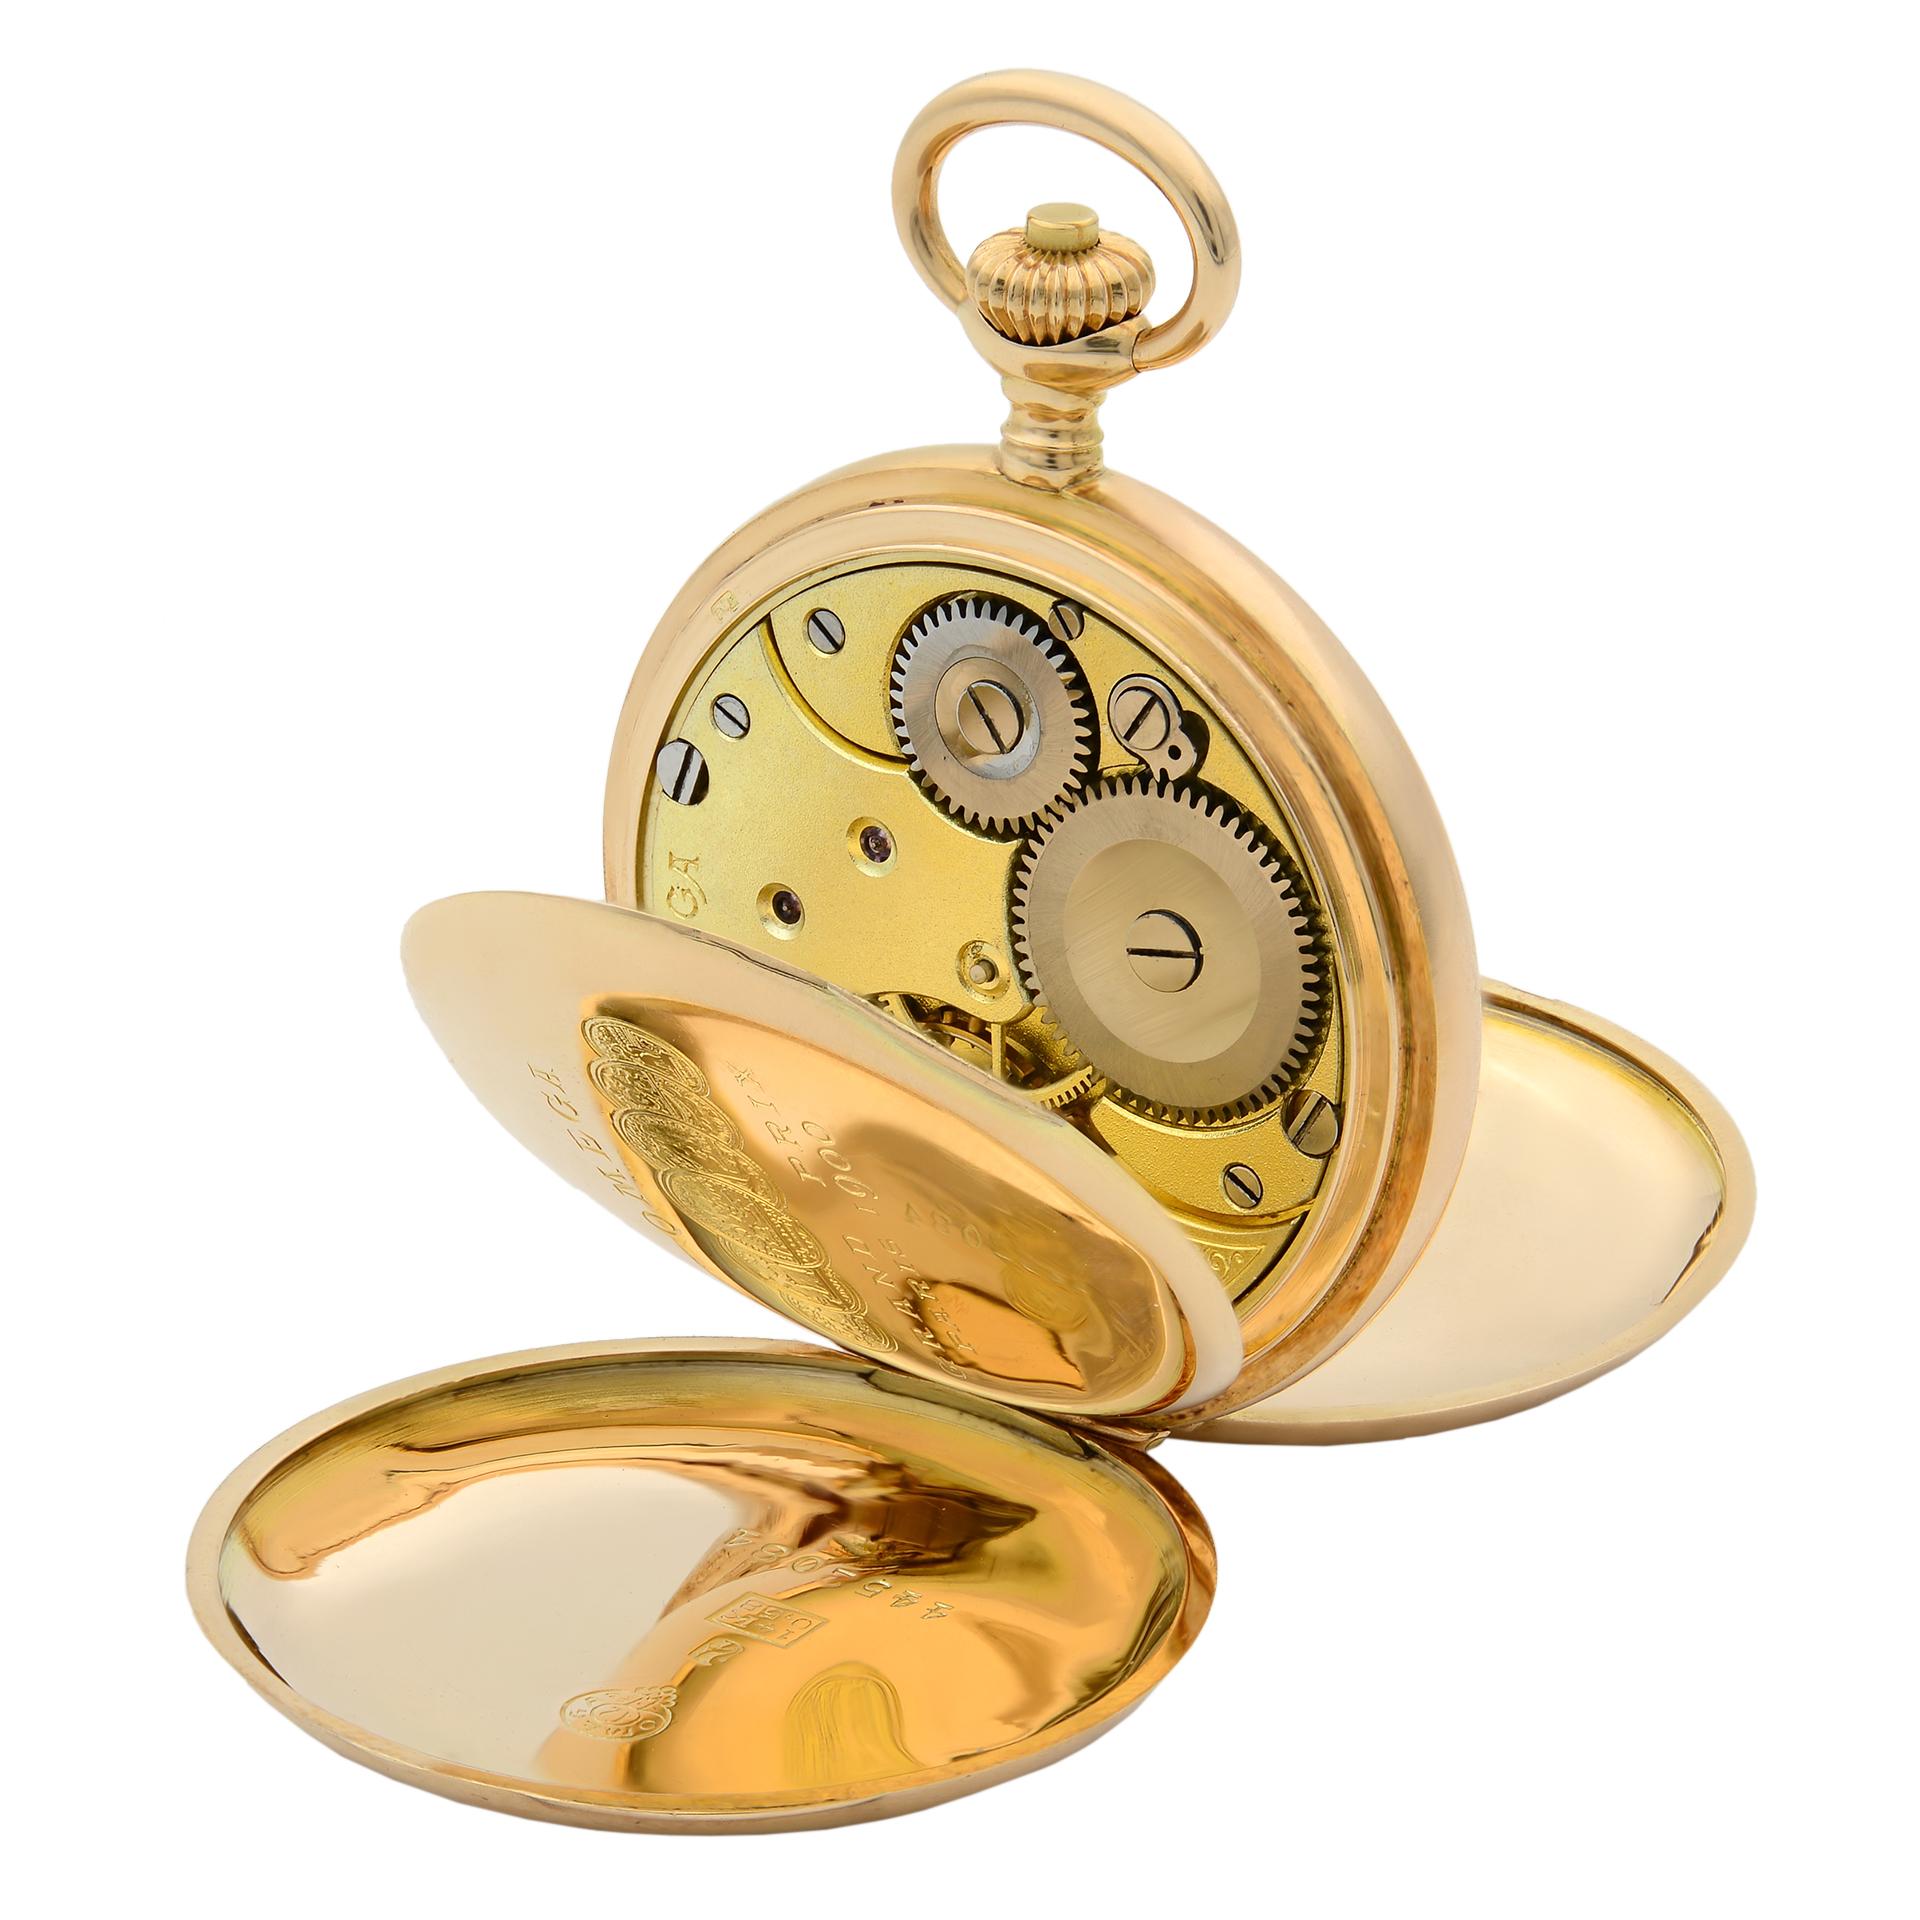 Diese Uhr wurde in den Jahren 1912-1916 hergestellt. 
Sehr gut erhaltener Zustand. 
Das Gesamtgewicht der Uhr beträgt 38::8 Gramm